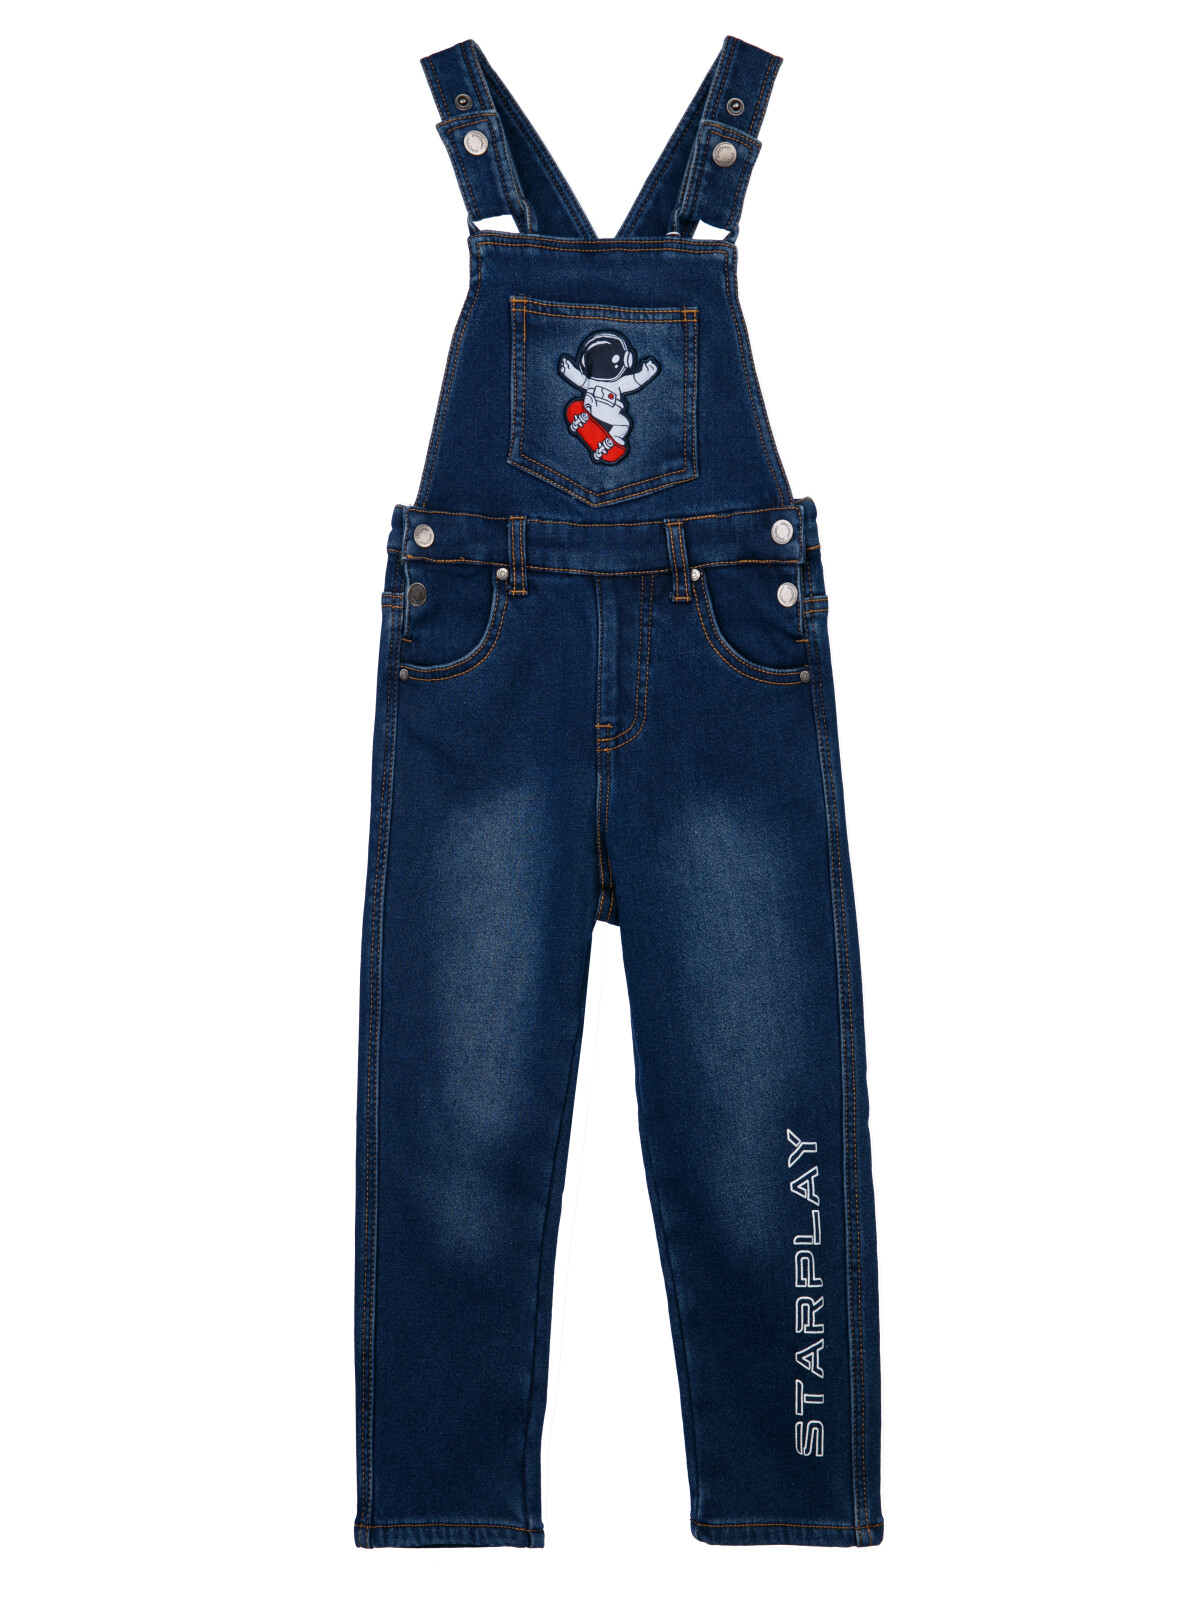 Полукомбинезон текстильный джинсовый утепленный флисом для мальчиков PlayToday, синий, 98 полукомбинезон текстильный джинсовый утепленный флисом для мальчиков